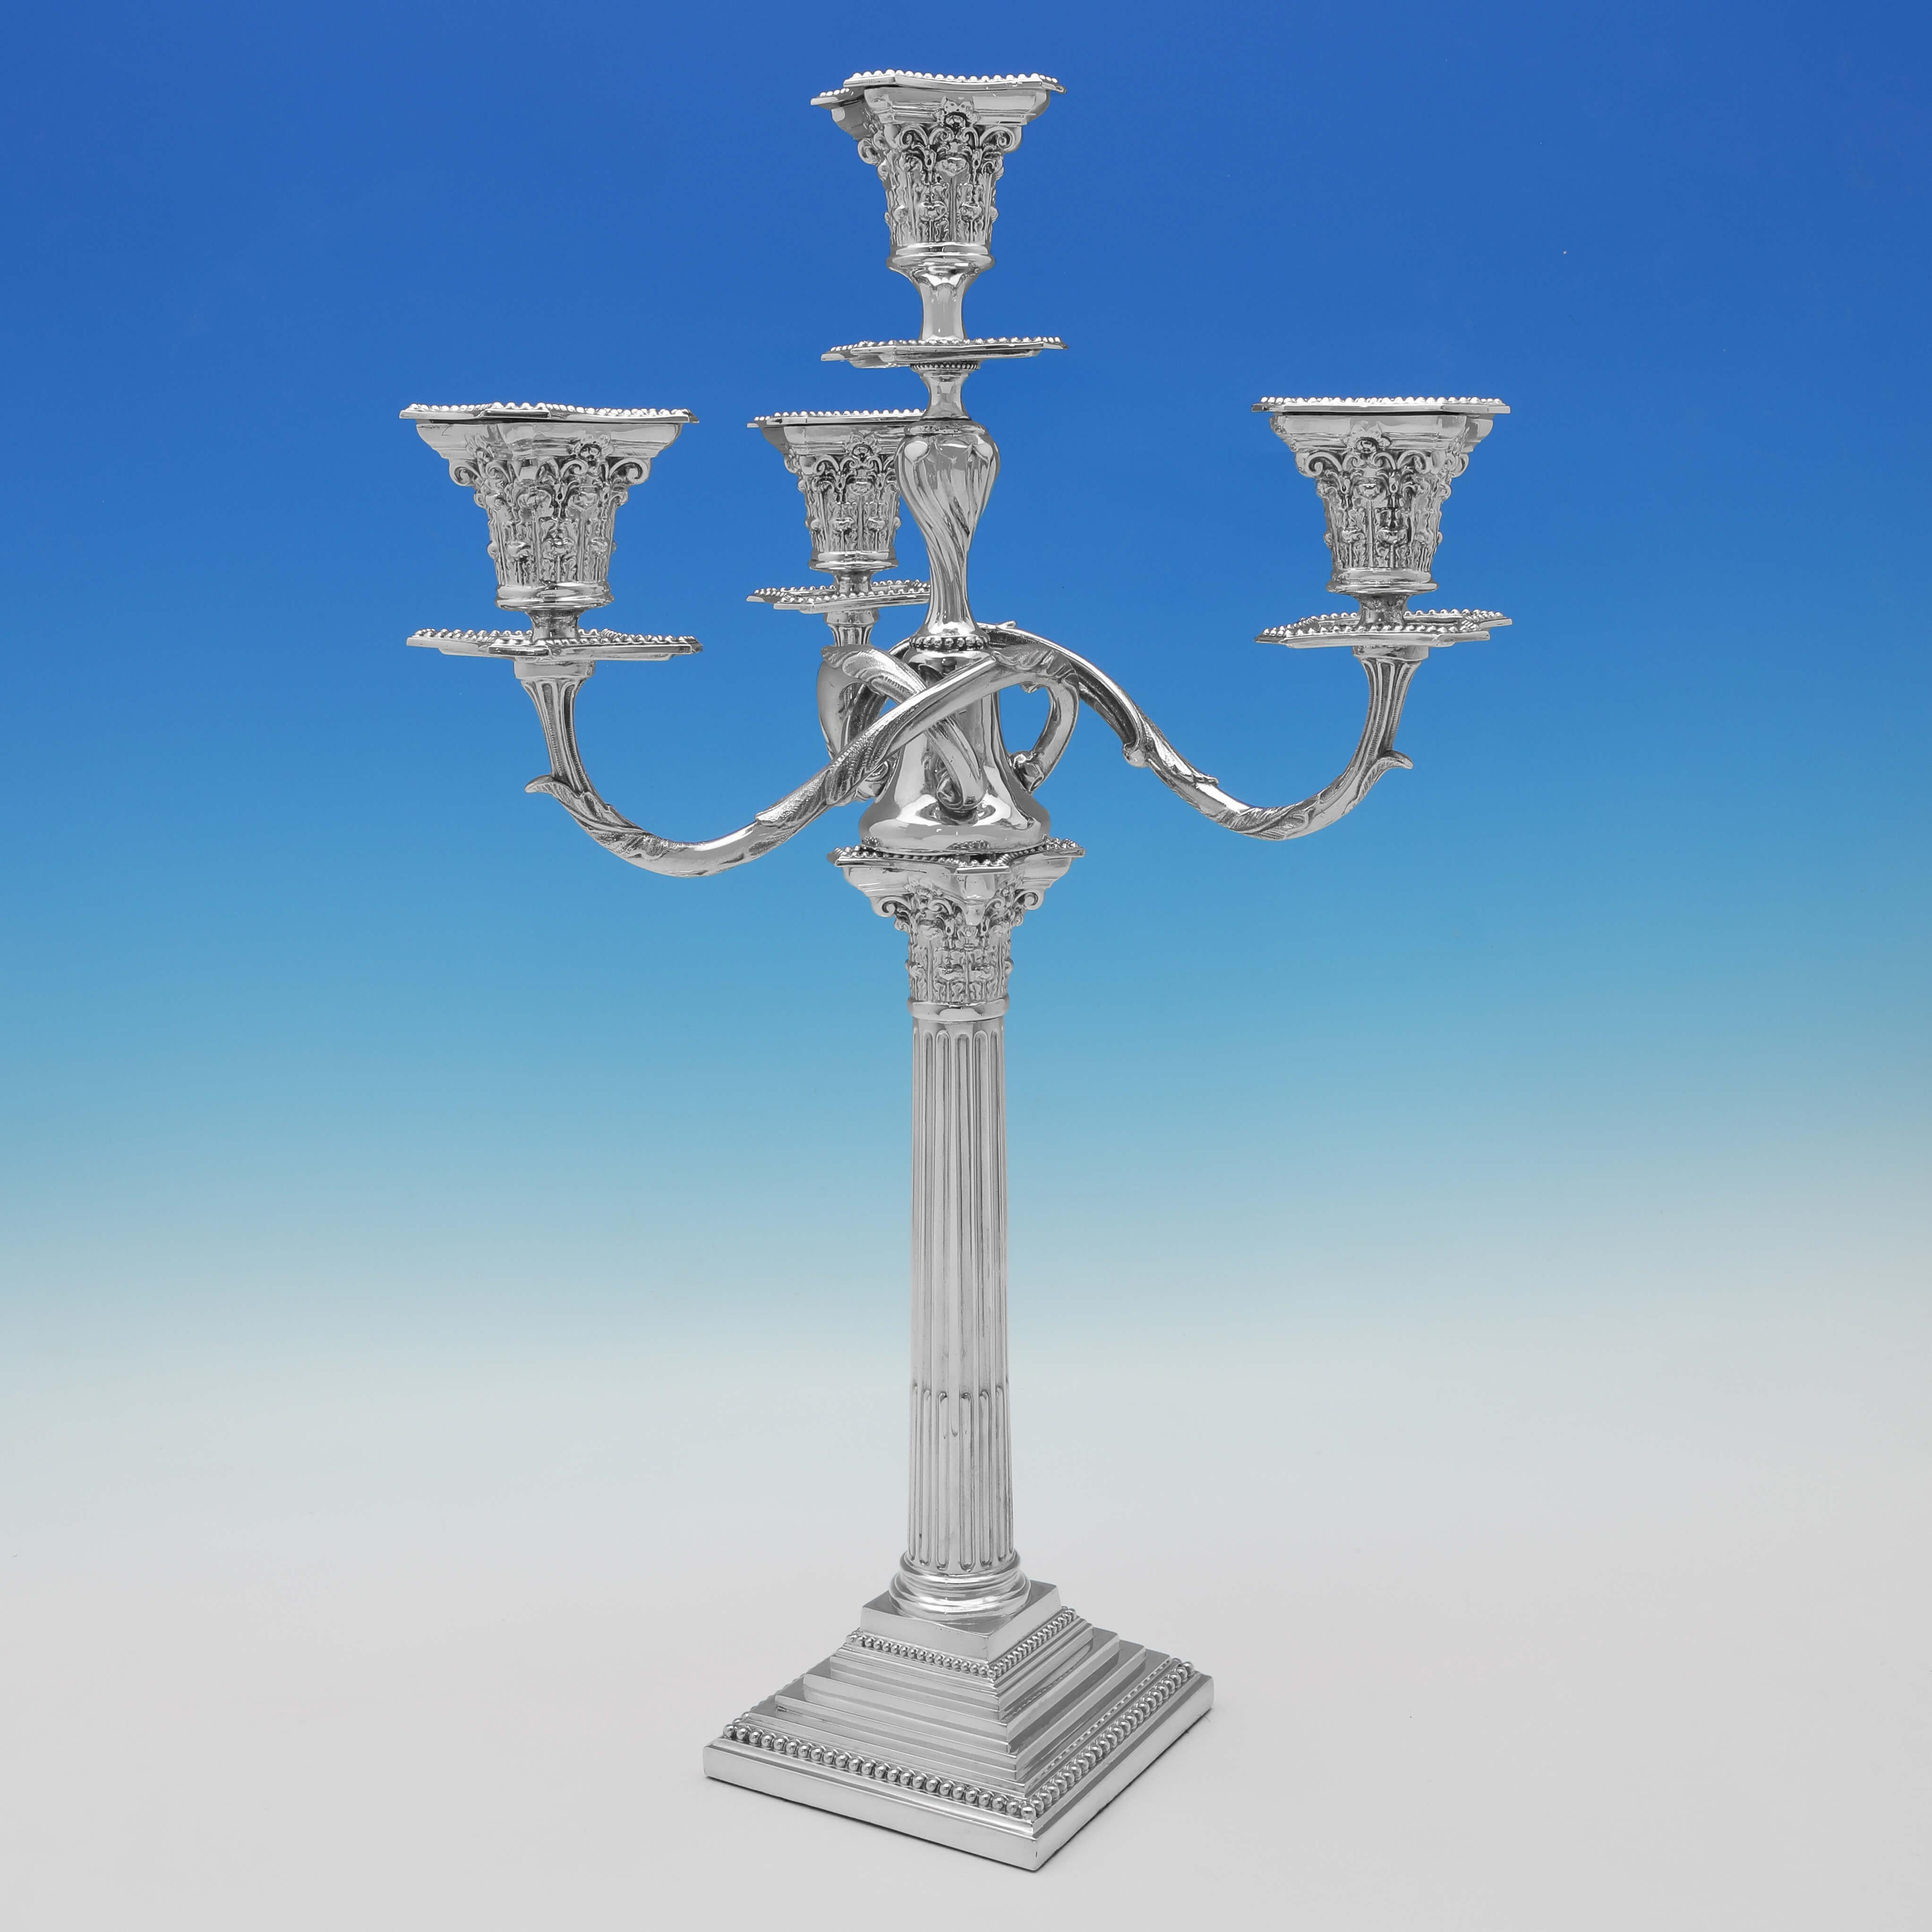 Fabriquée vers 1890 par Spurrier & Company, cette élégante paire de chandeliers anciens en métal argenté est de style corinthien, chacun contenant 4 bougies et présentant des bases en gradins et des bordures de perles.

 Chaque candélabre mesure